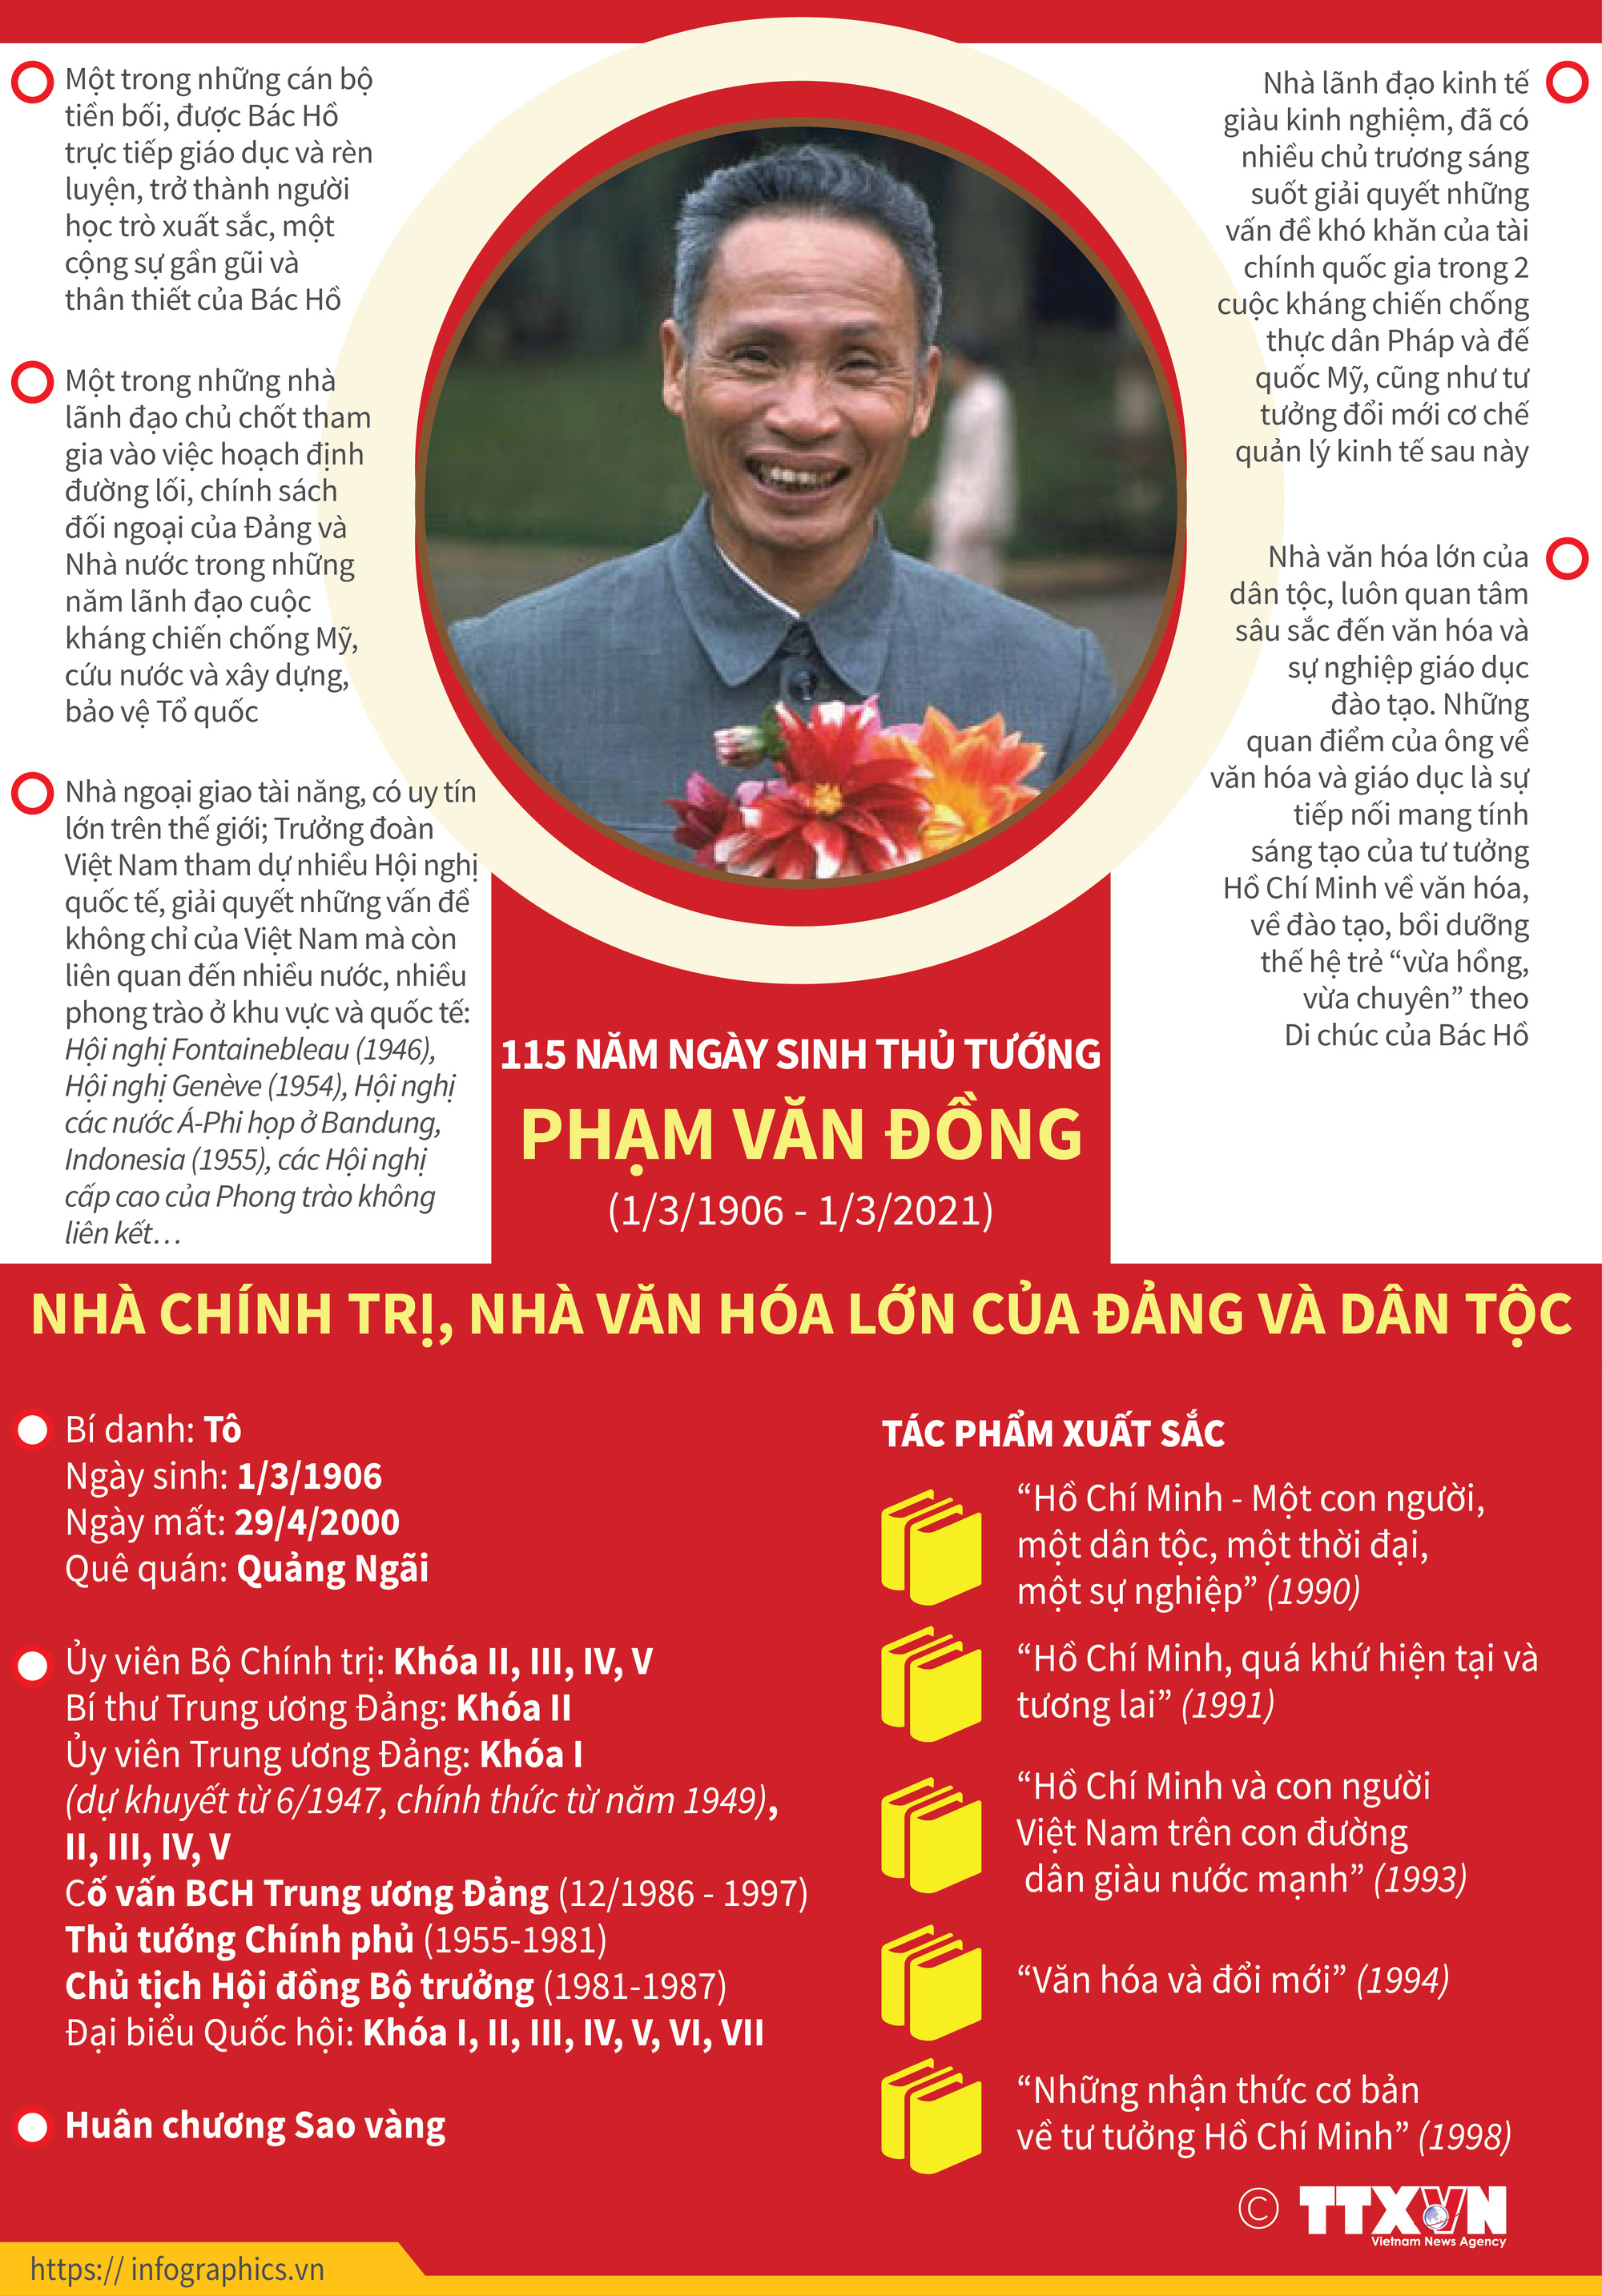 115 năm Ngày sinh đồng chí Phạm Văn Đồng (1906-2021): Phạm Văn Đồng - Nhà lãnh đạo xuất sắc của Đảng - Ảnh 4.